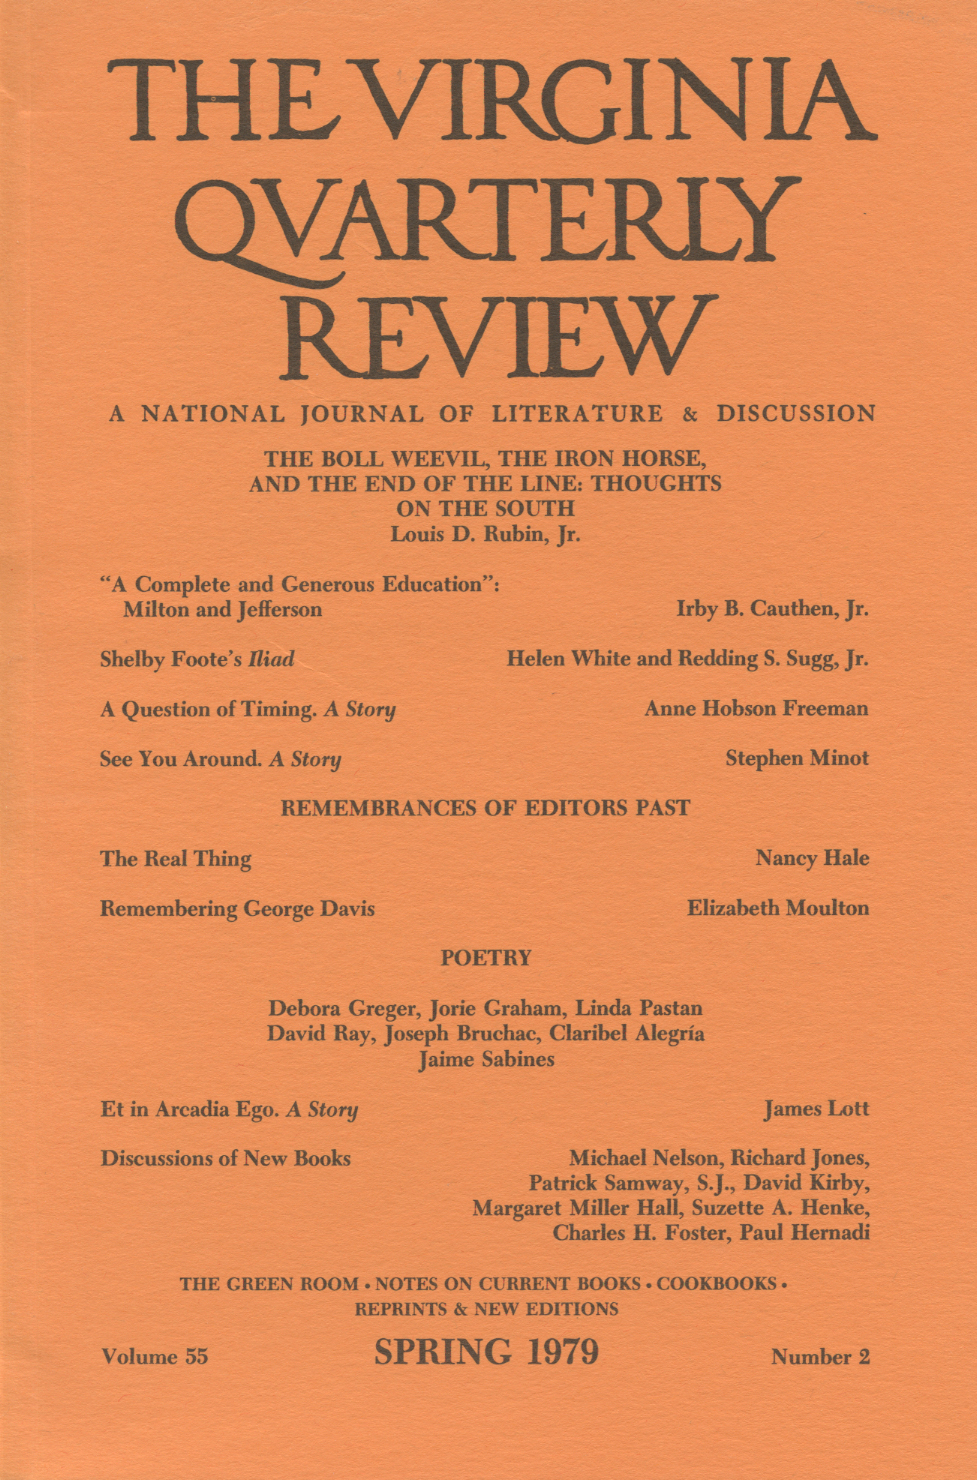 Virginia Quarterly Review, Spring 1979 cover